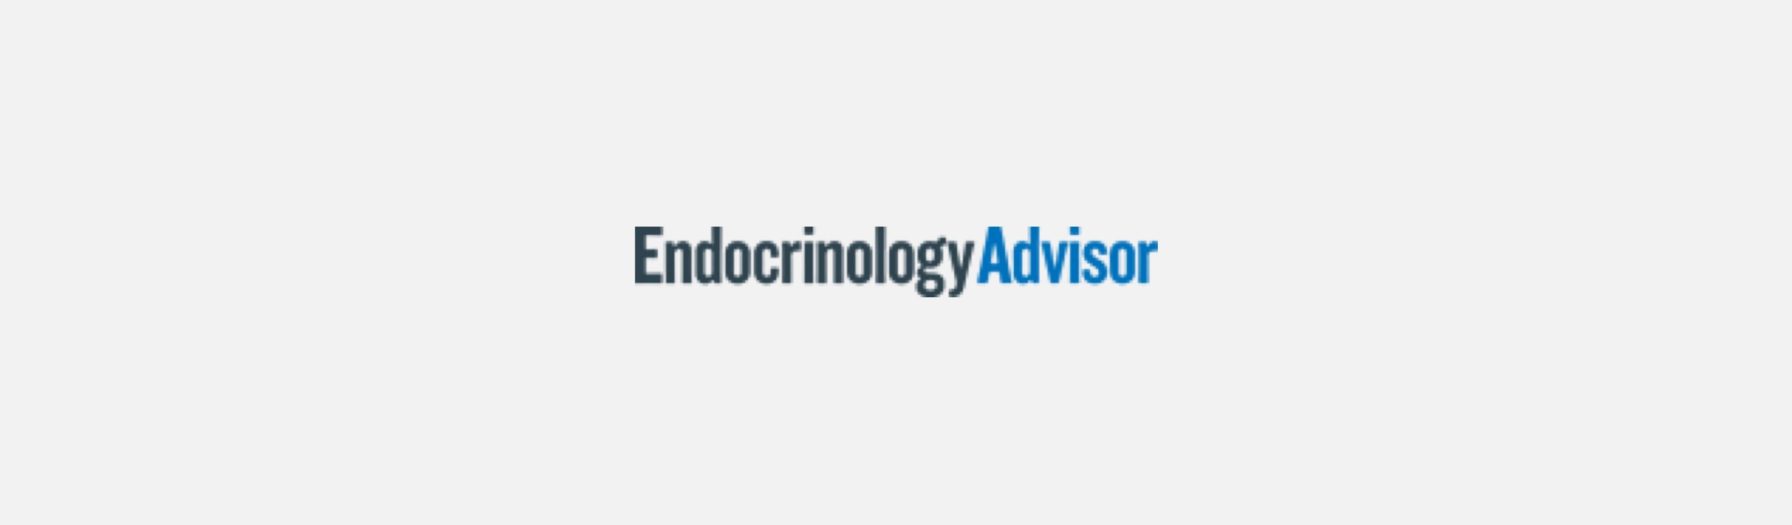  Endocrinology Advisor logo